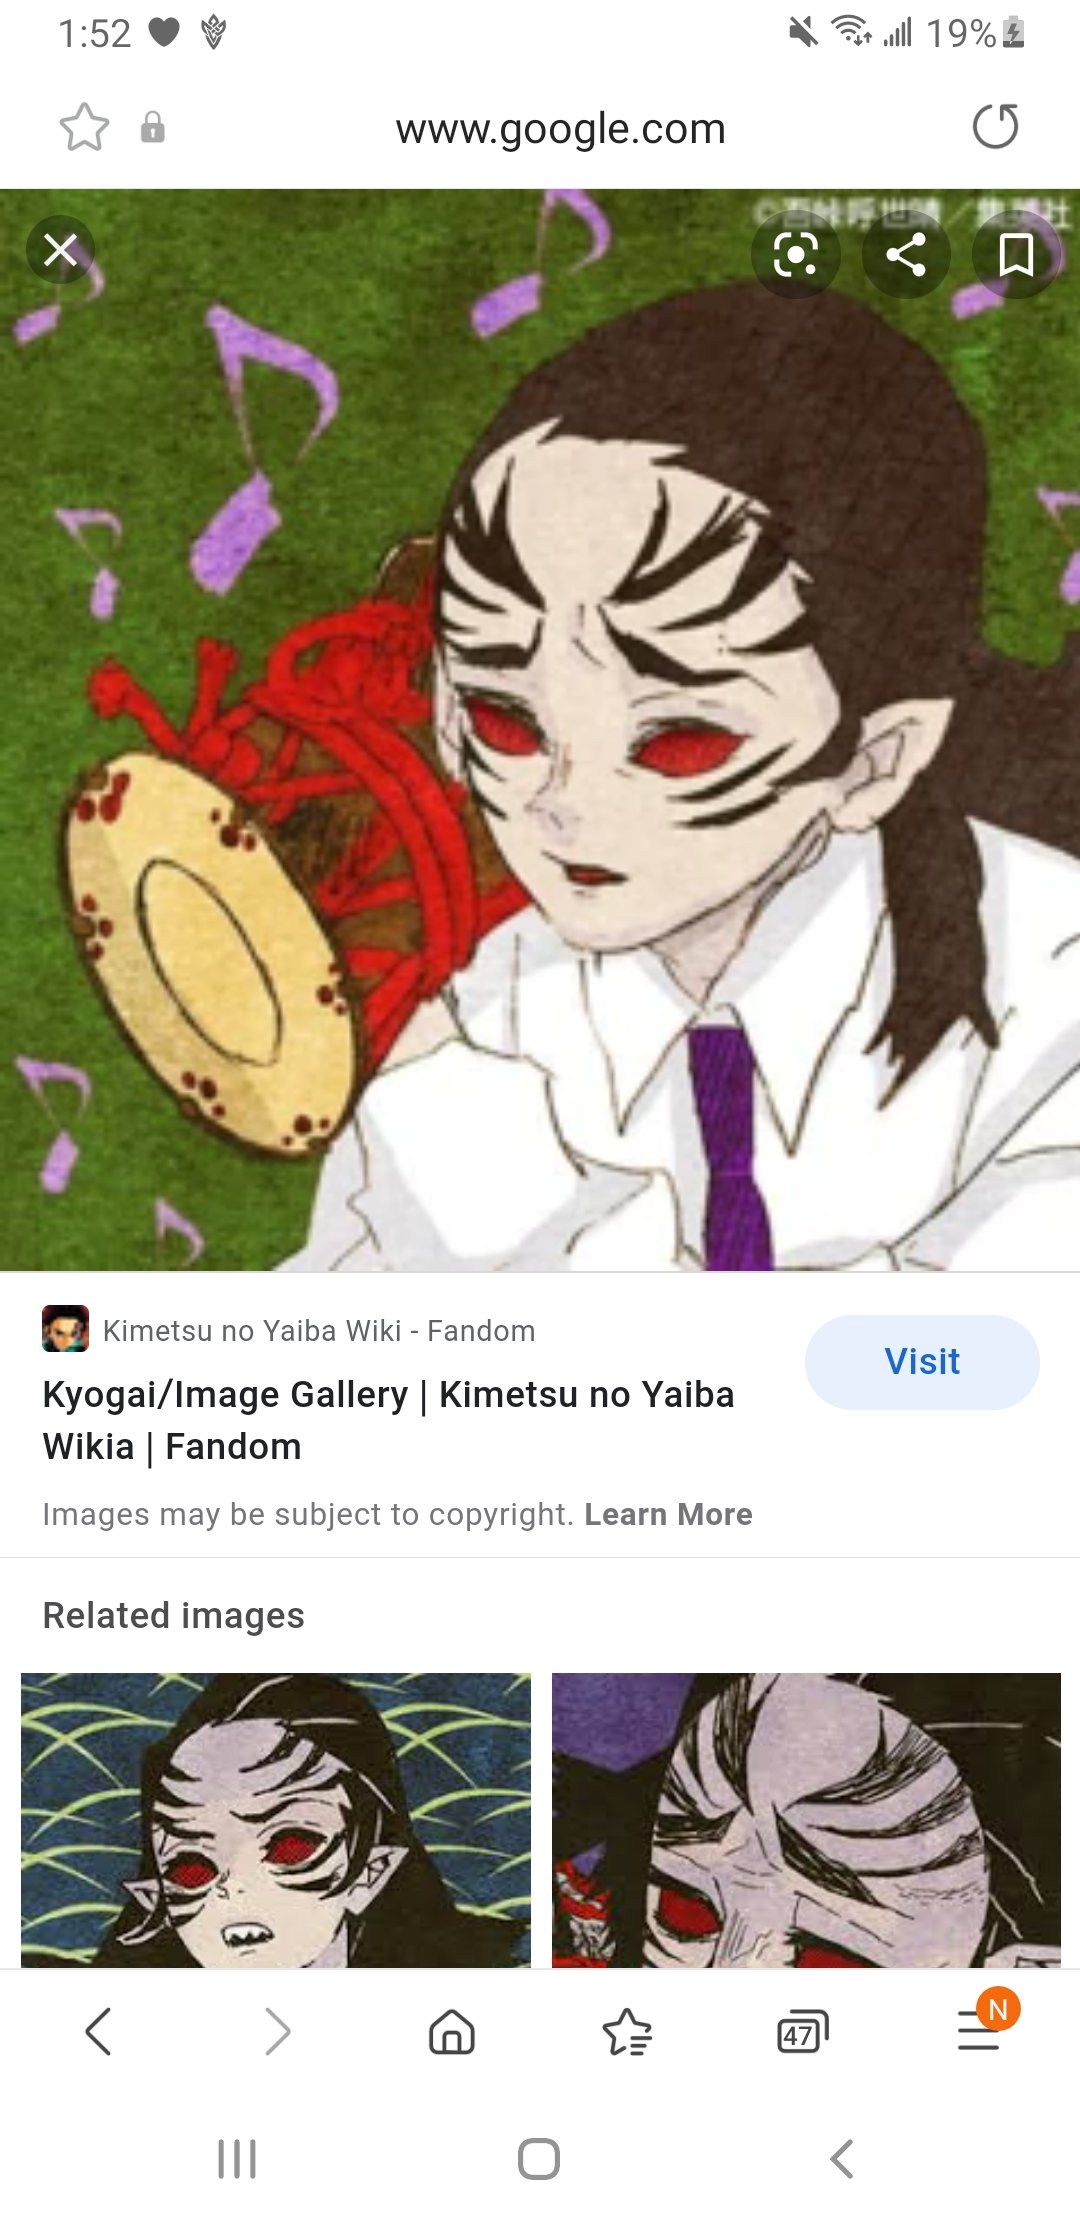 Kyogai, Kimetsu no Yaiba Wiki